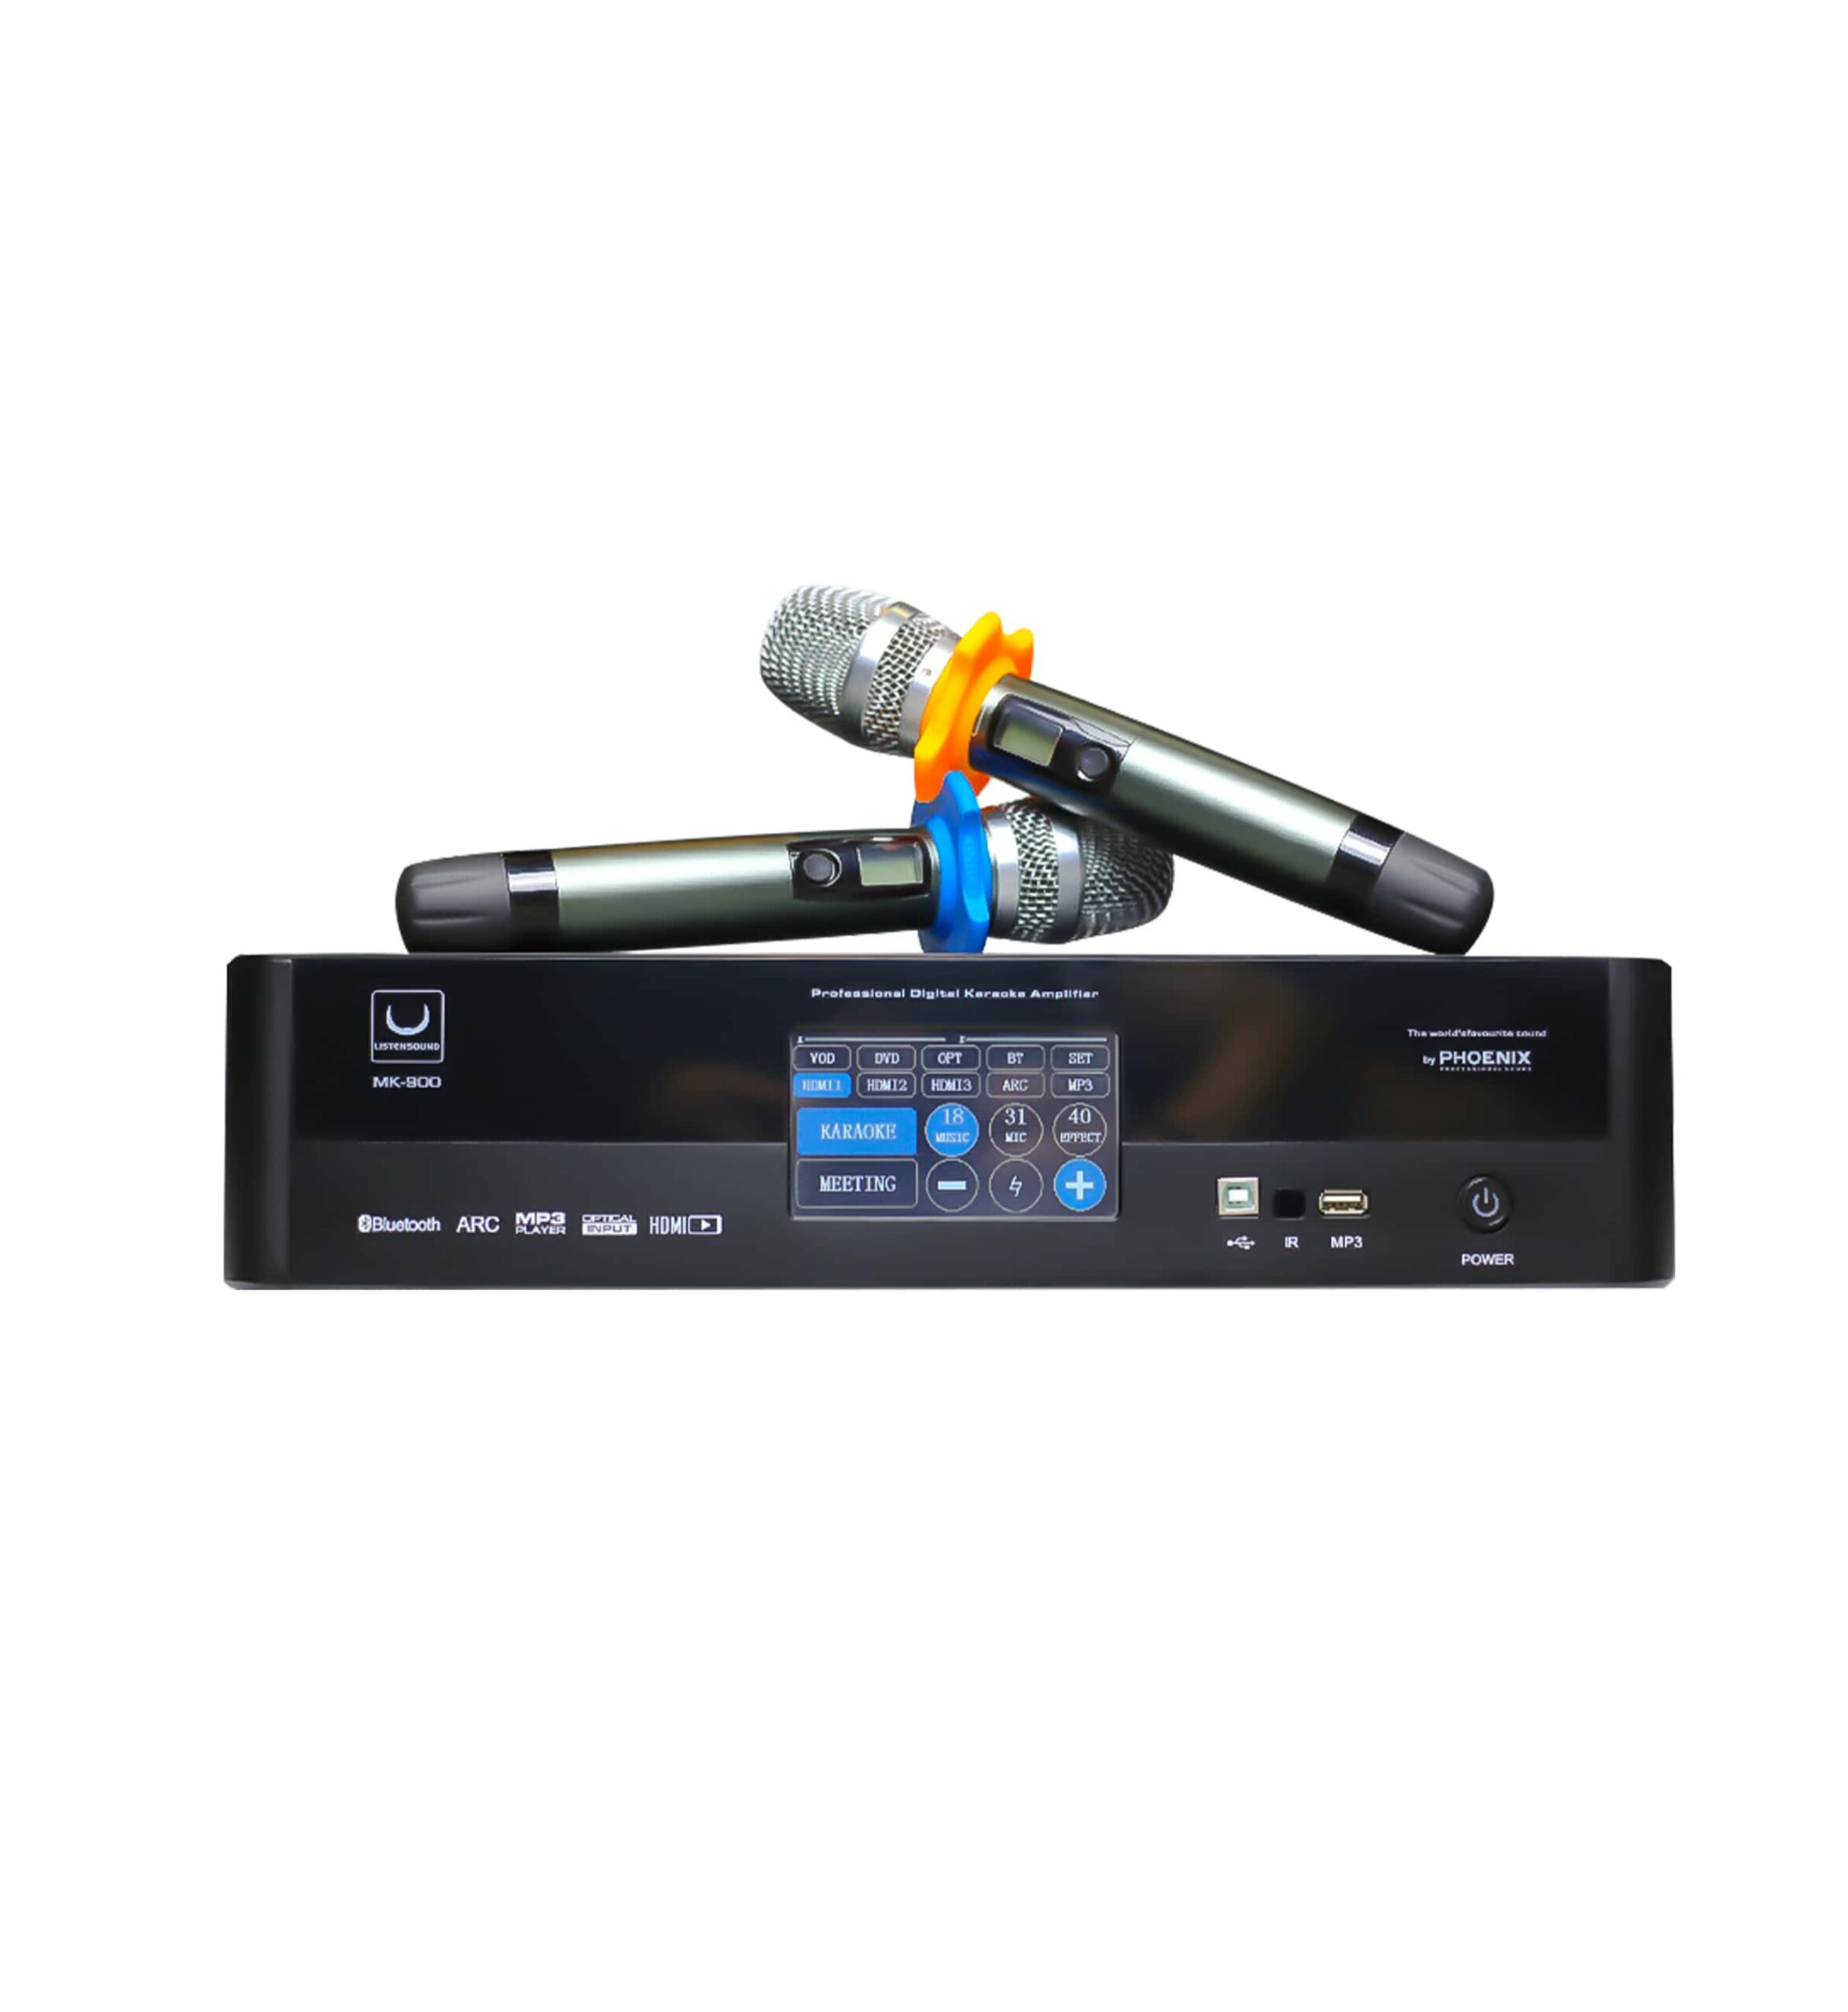 Vang số liền công suất 3 in 1 Listensound MK 900 thiết bị âm thanh thông minh khi được trang bị cả cục đẩy công suất lẫn một bộ micro không dây cao cấp